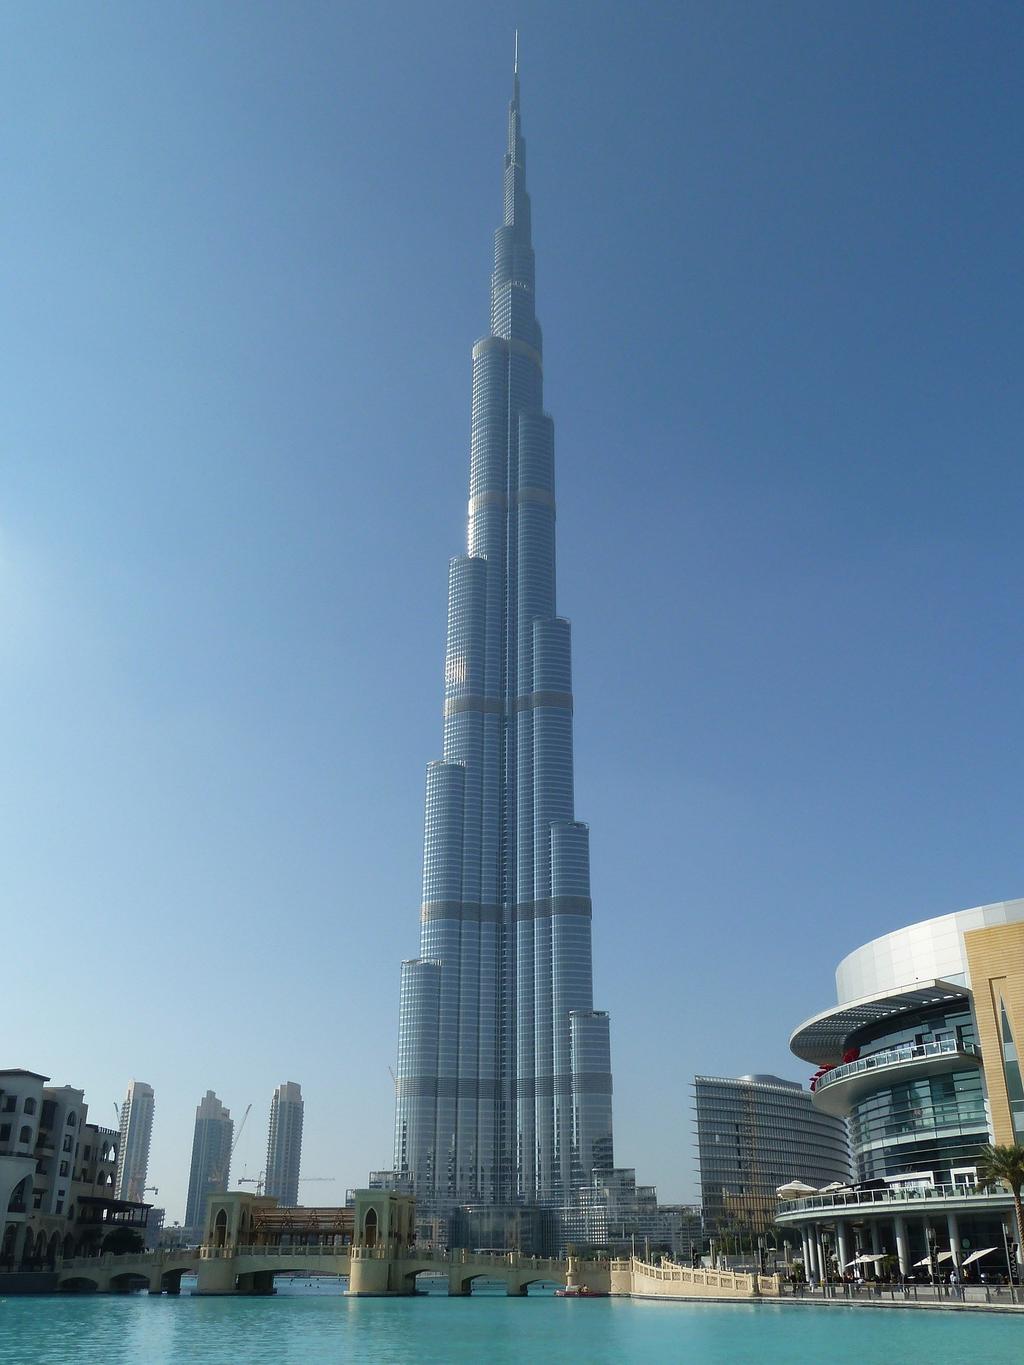 vo n: Wi lli Klasse 2 Pixabay_didiwo Der Burj Khalifa ist ein Wolkenkratzer in Dubai. Bis zu seiner Einweihung hieß das Gebäude Burj Dubai.